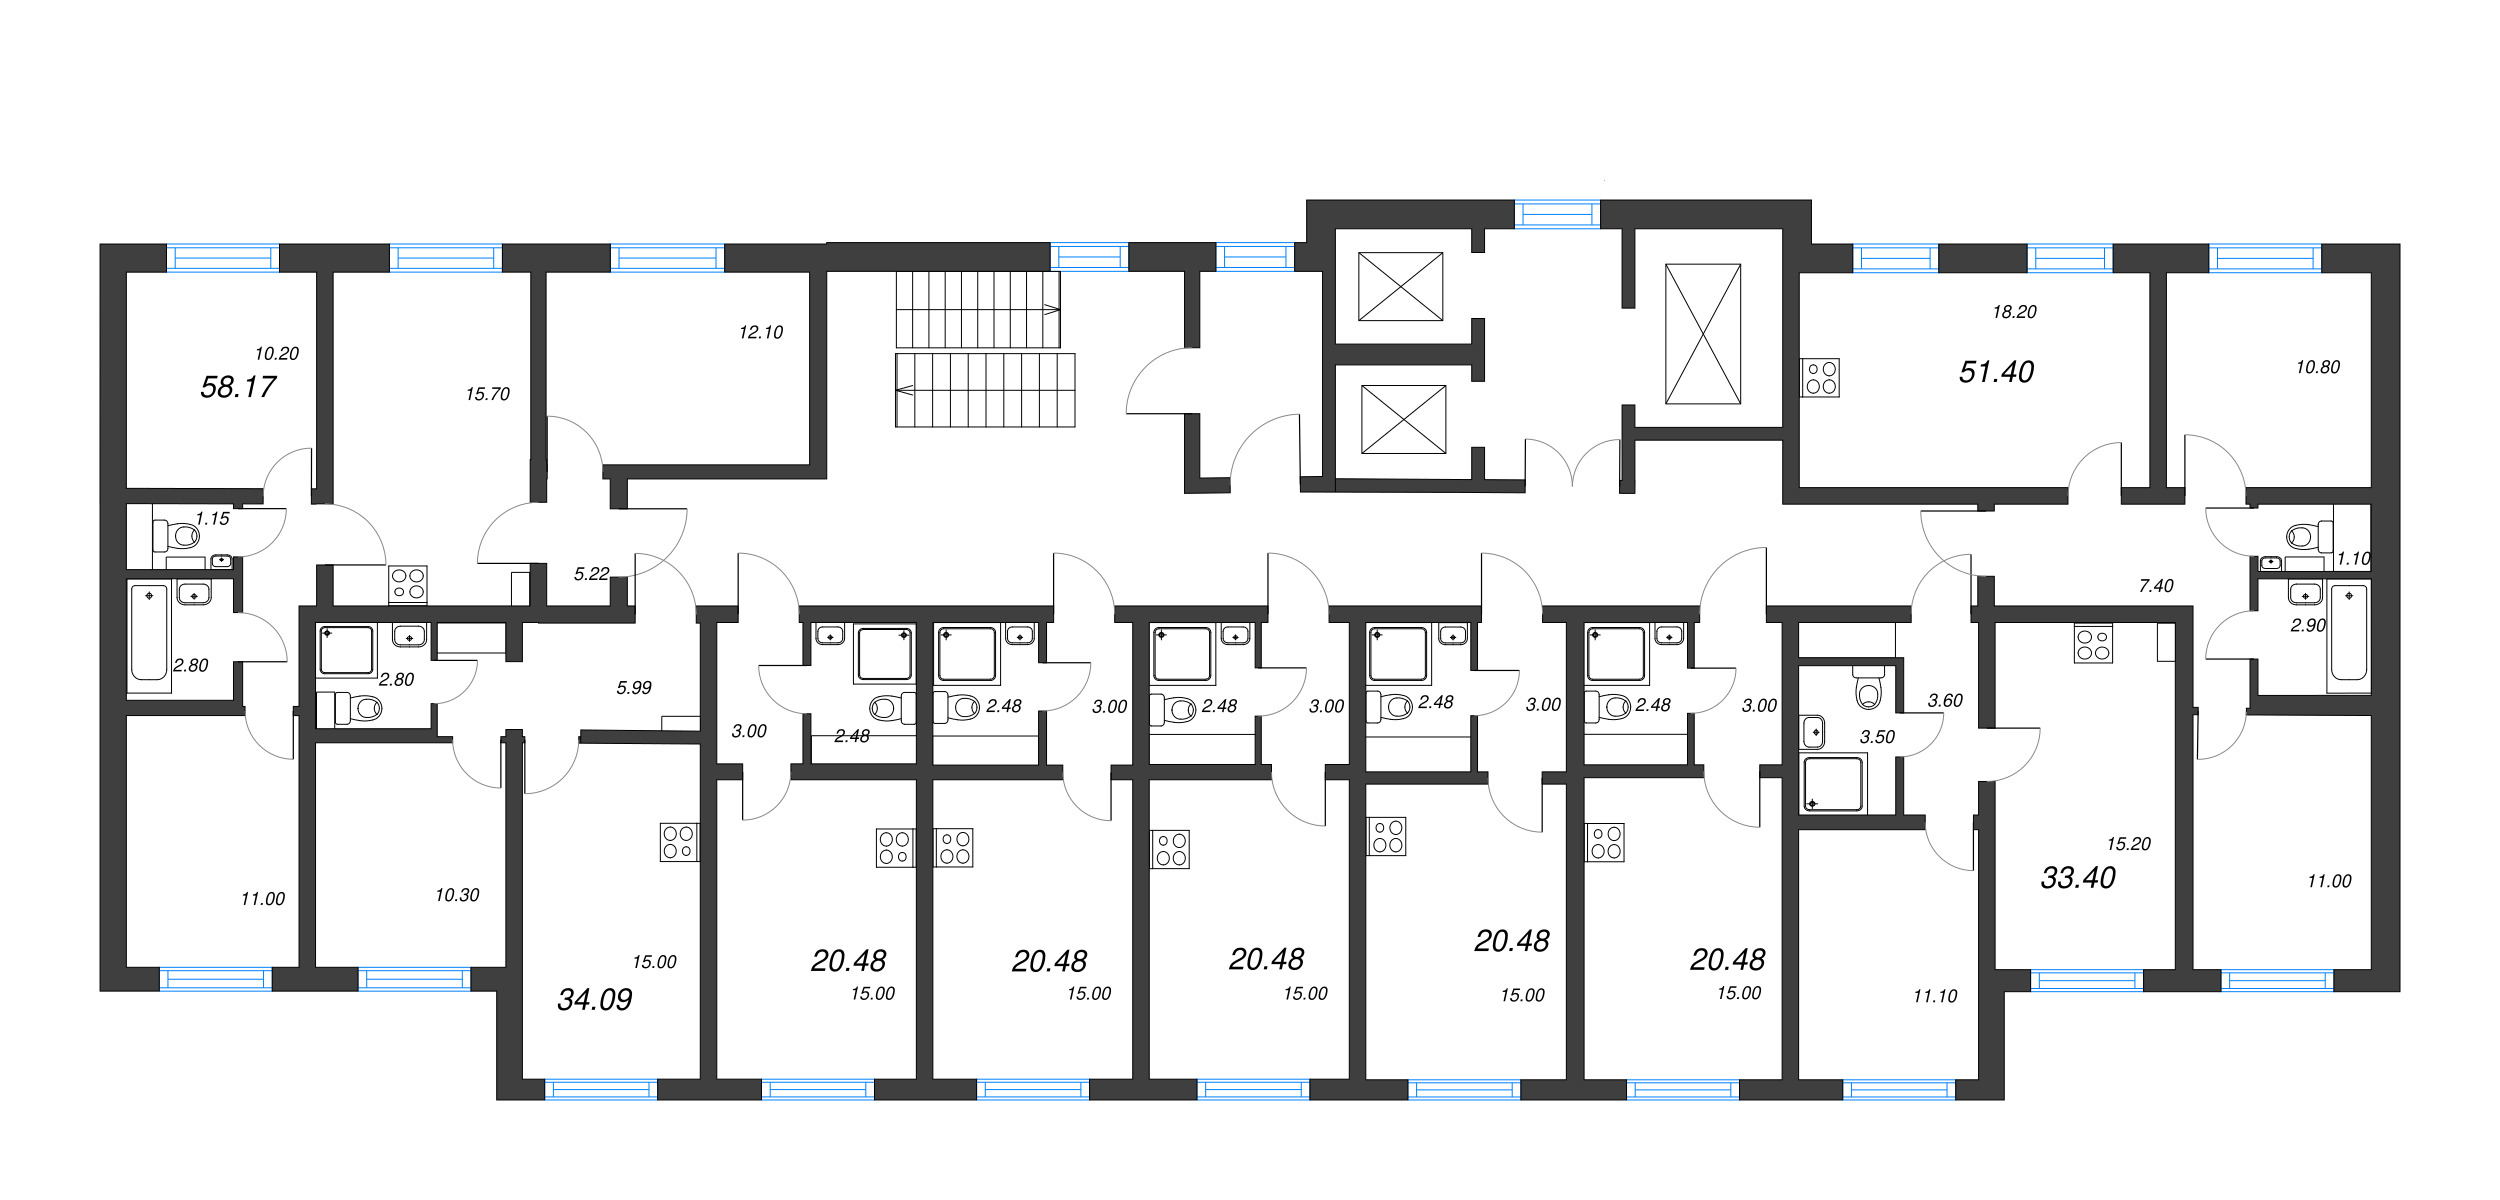 Квартира-студия, 20.48 м² в ЖК "Ручьи" - планировка этажа